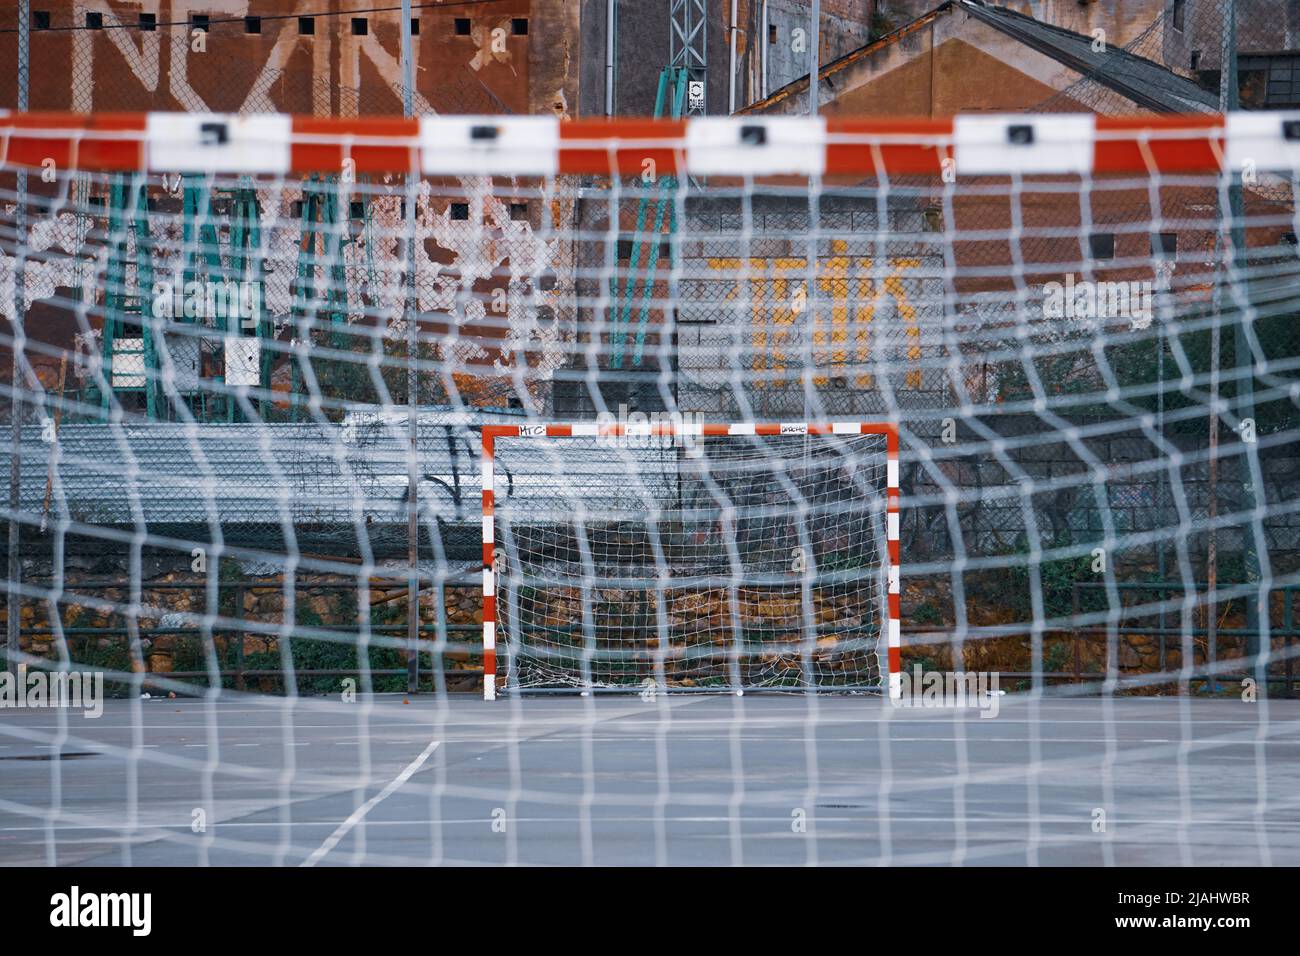 street soccer goal sports equipment Stock Photo